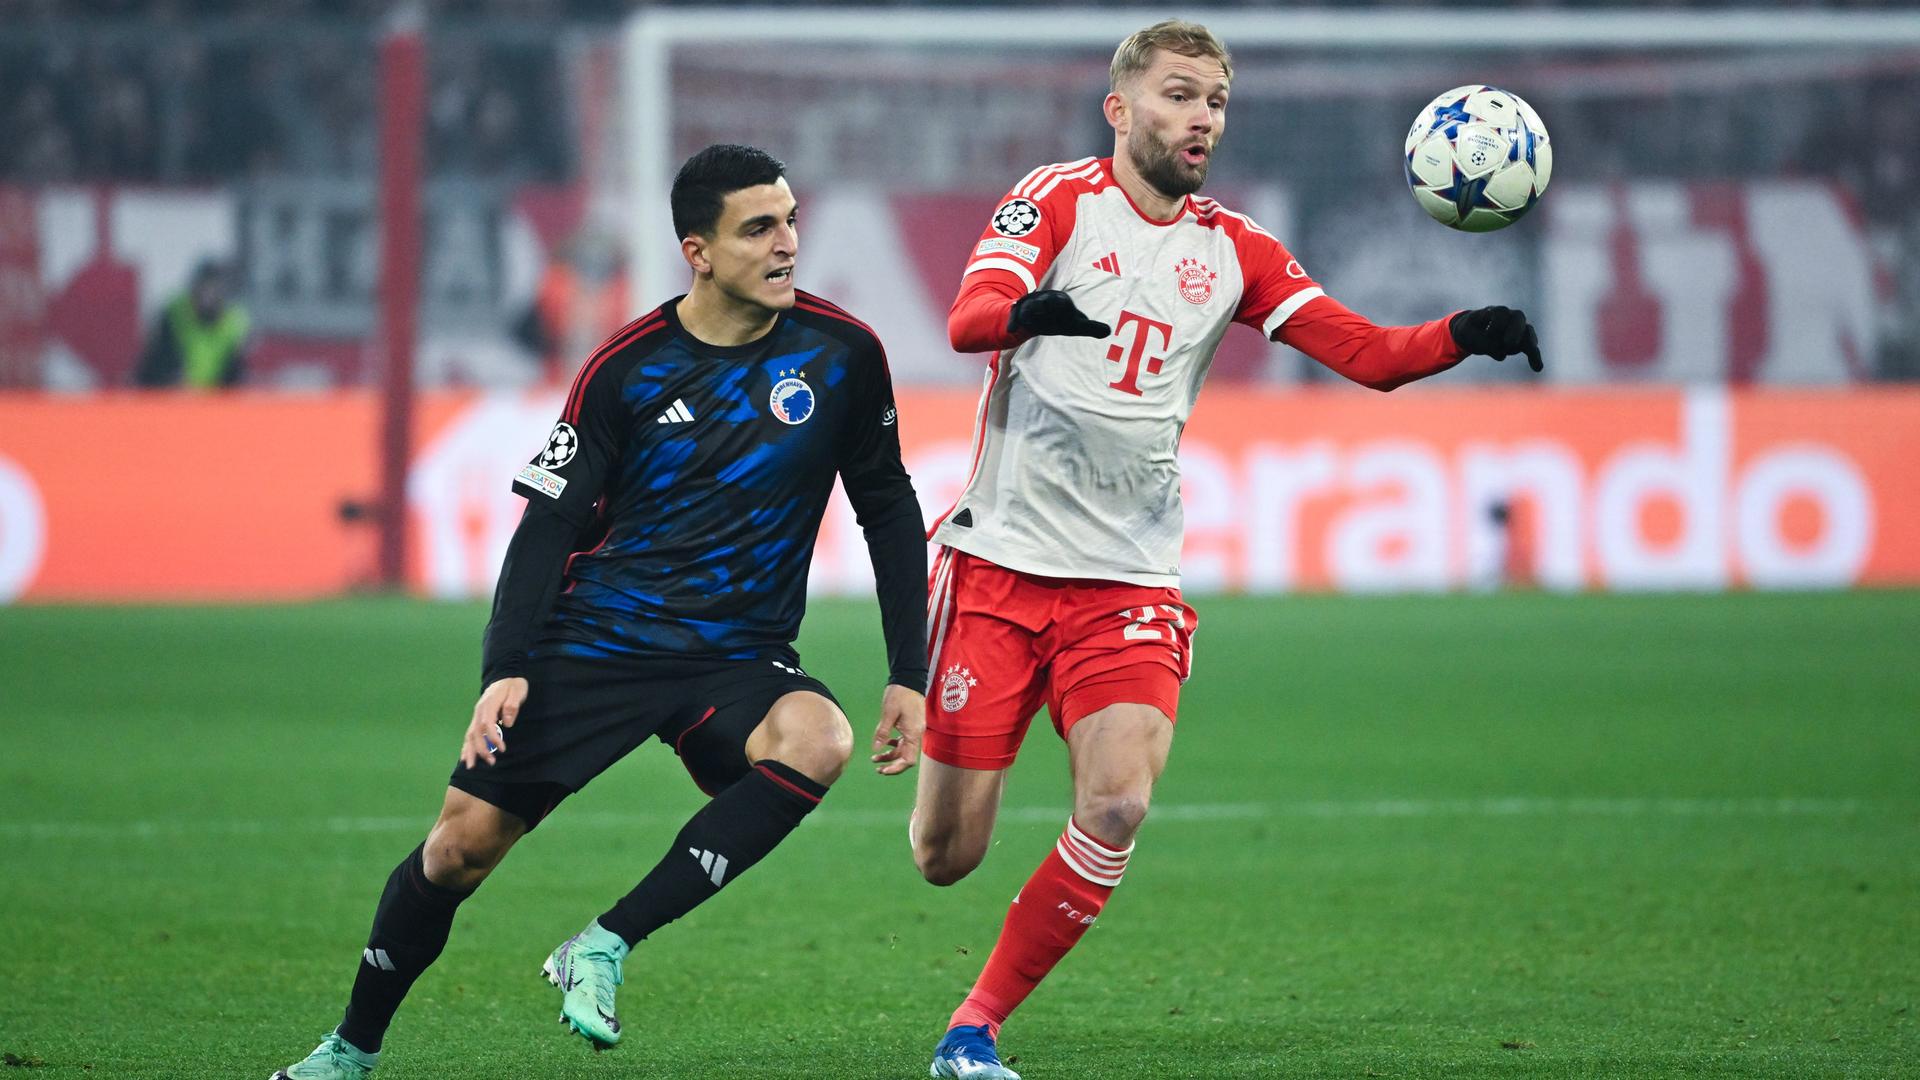 Kopenhagens Mohamed Elyounoussi im dunklen Trikot und Münchens Konrad Laimer im rot-weißen Trikot kämpfen um den Ball.